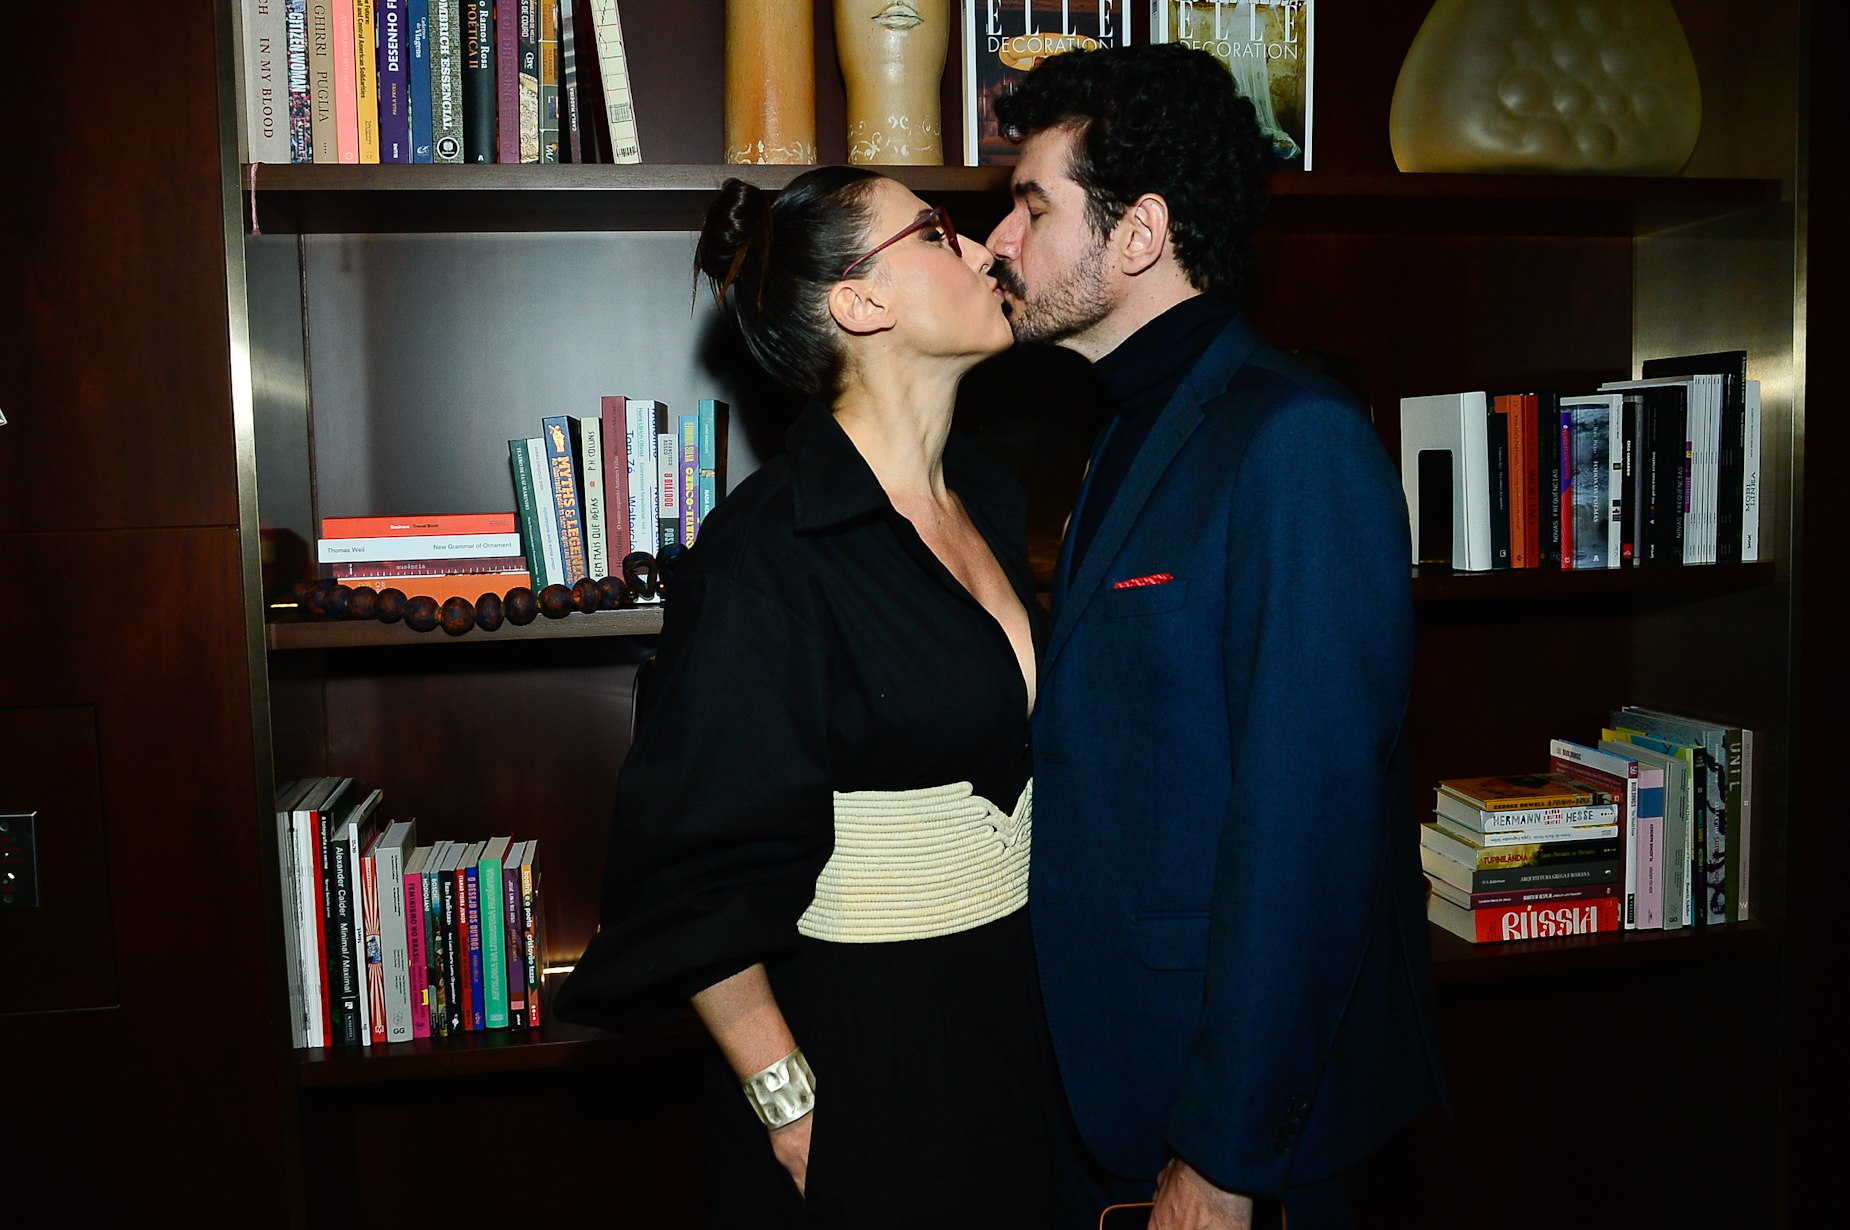 Apaixonada, Paola Carosella se empolga e troca beijos com namorado gato em evento